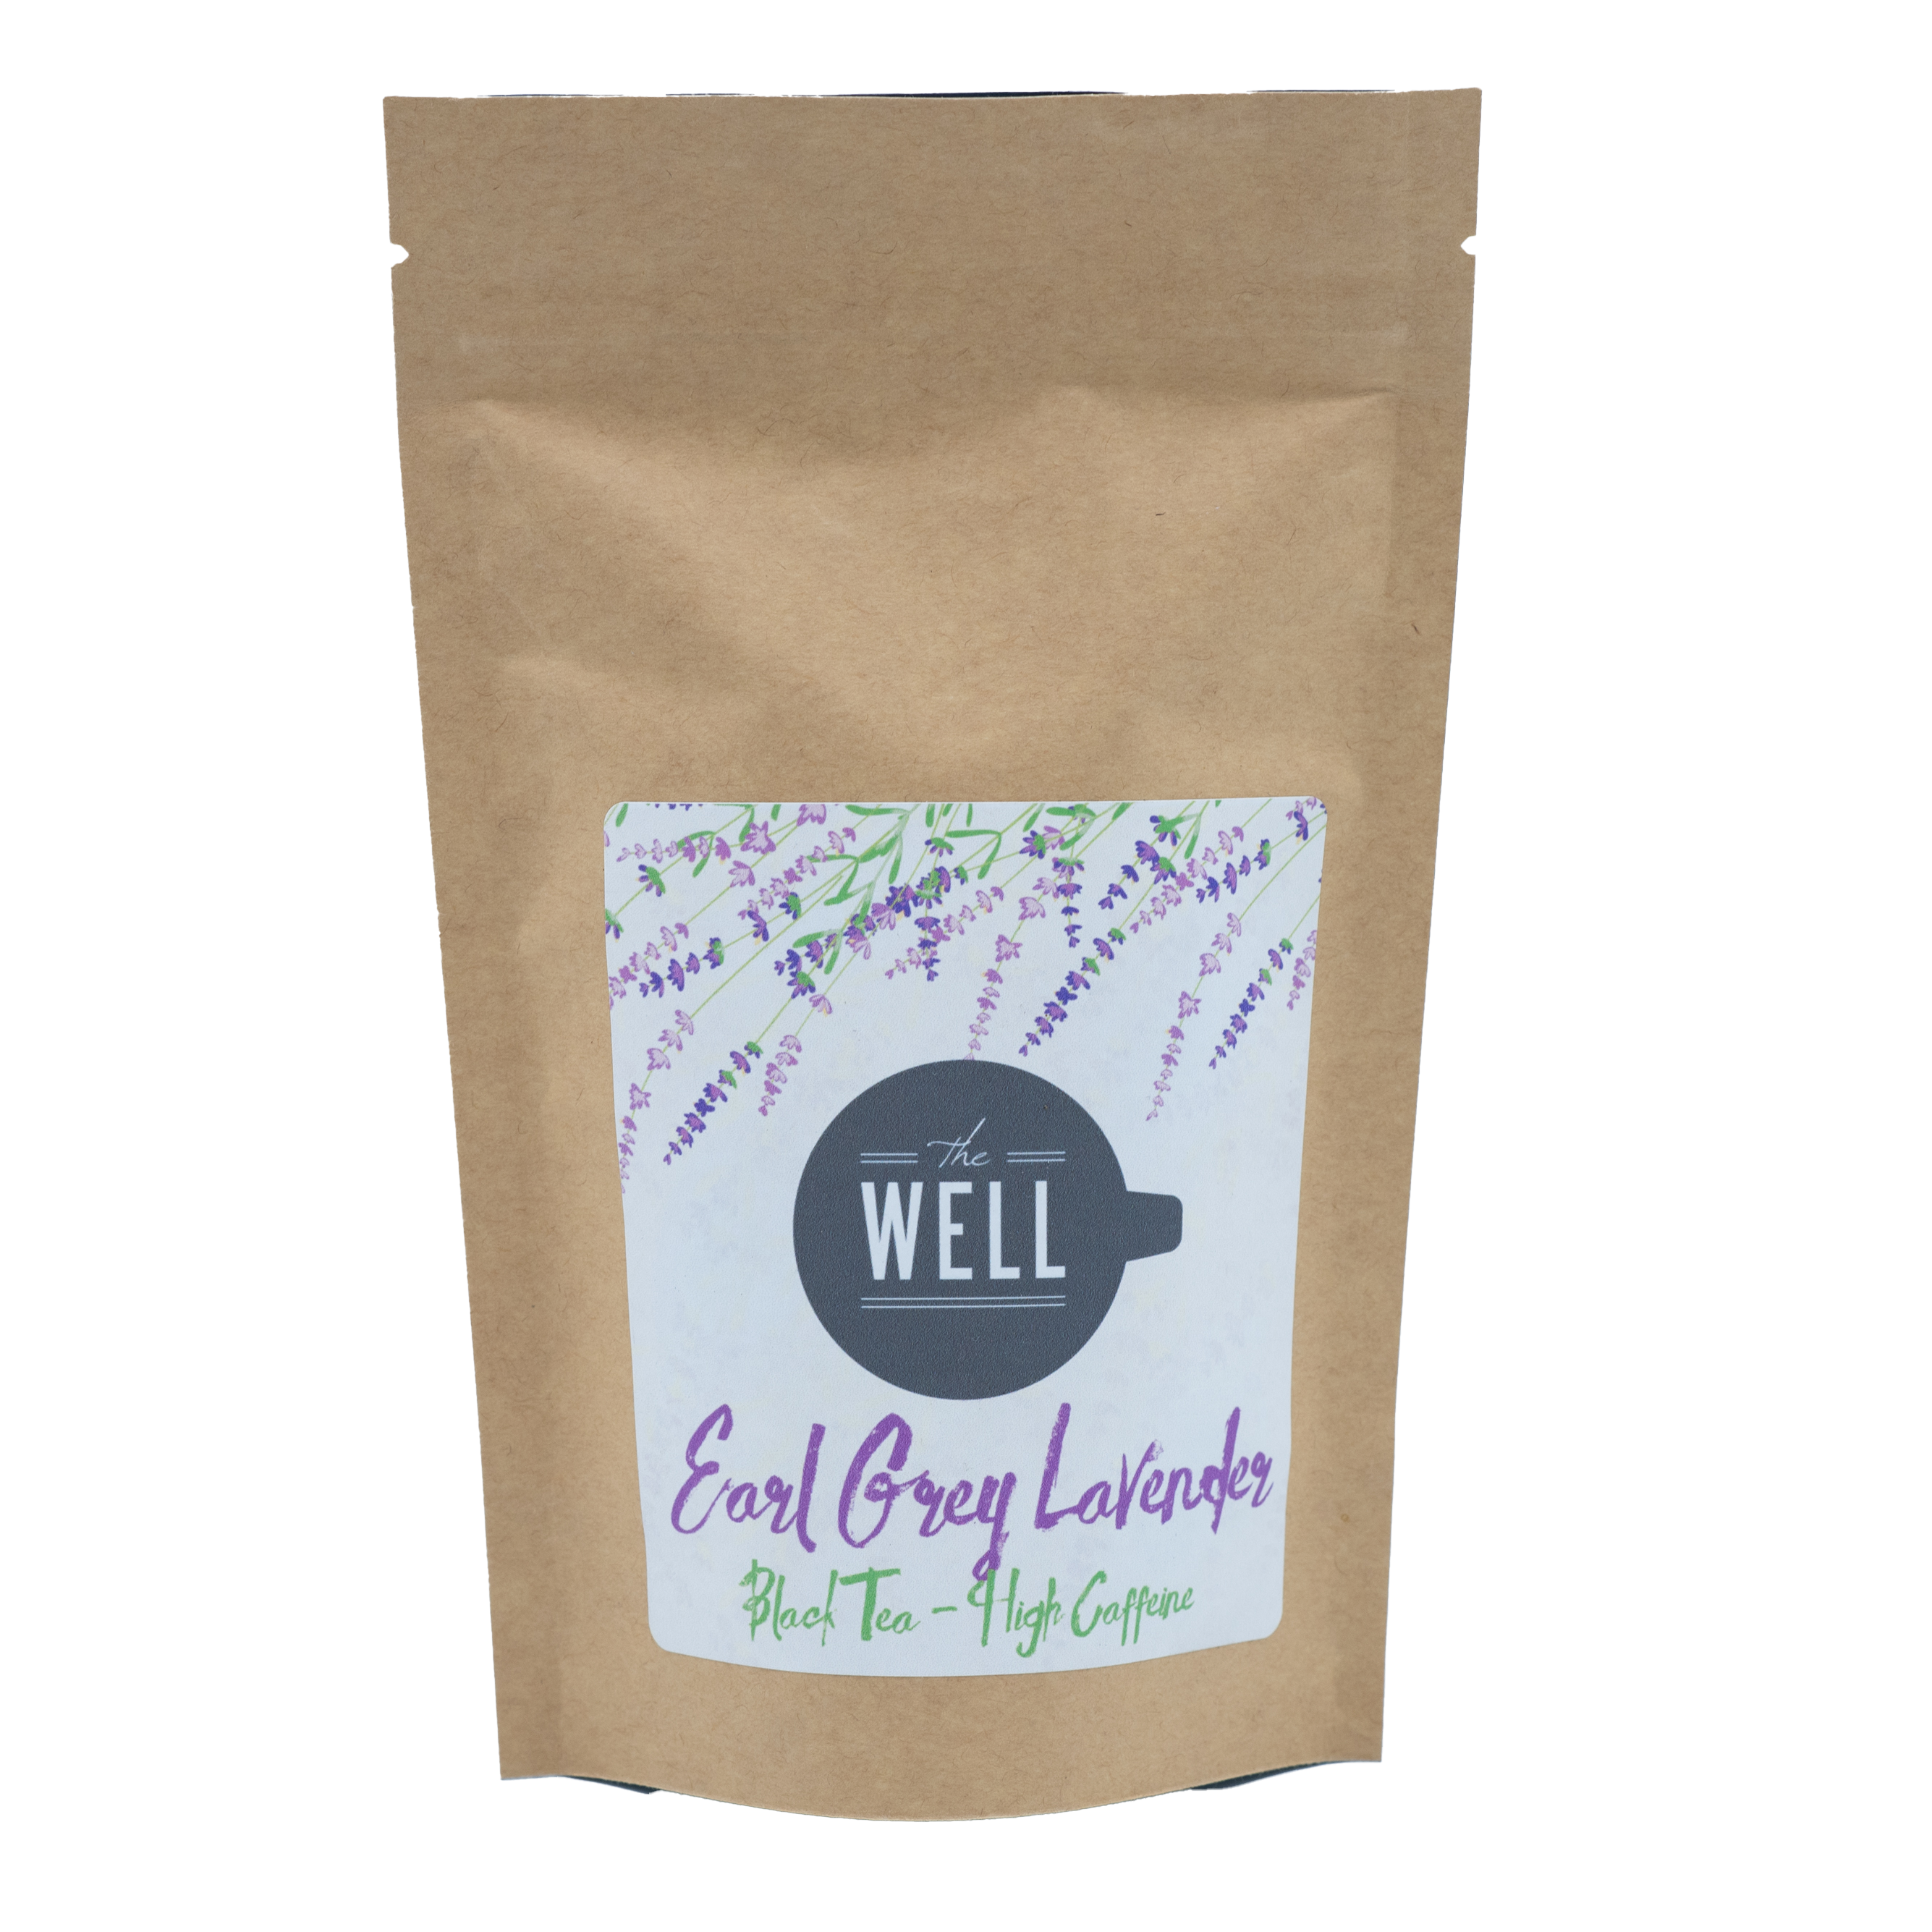 Loose Leaf Tea (wholesale Retail bags)